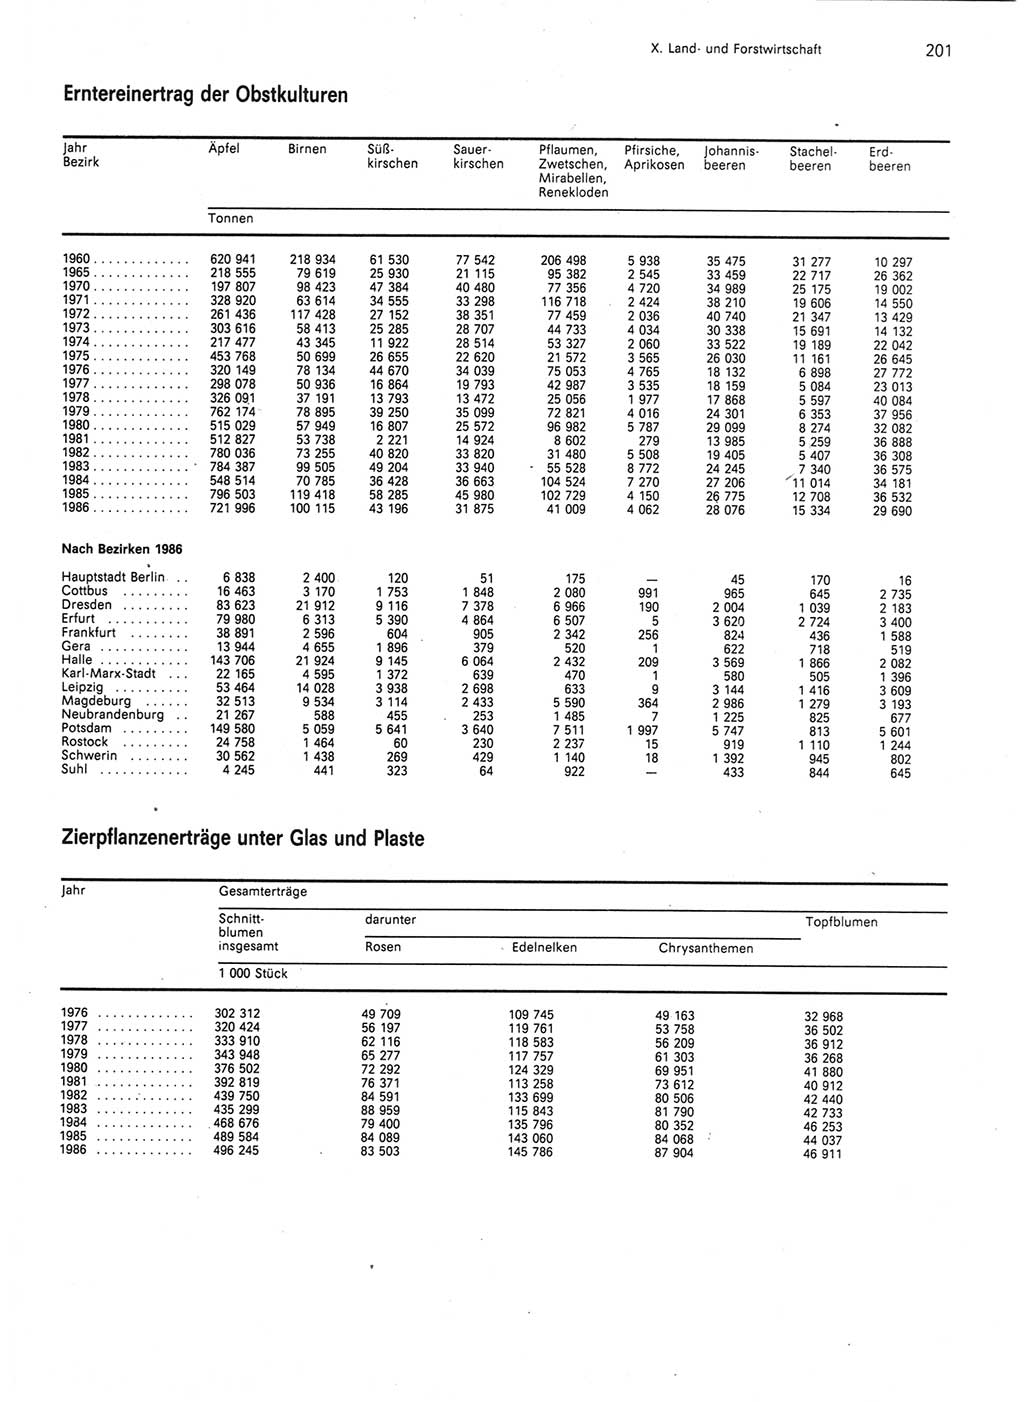 Statistisches Jahrbuch der Deutschen Demokratischen Republik (DDR) 1987, Seite 201 (Stat. Jb. DDR 1987, S. 201)